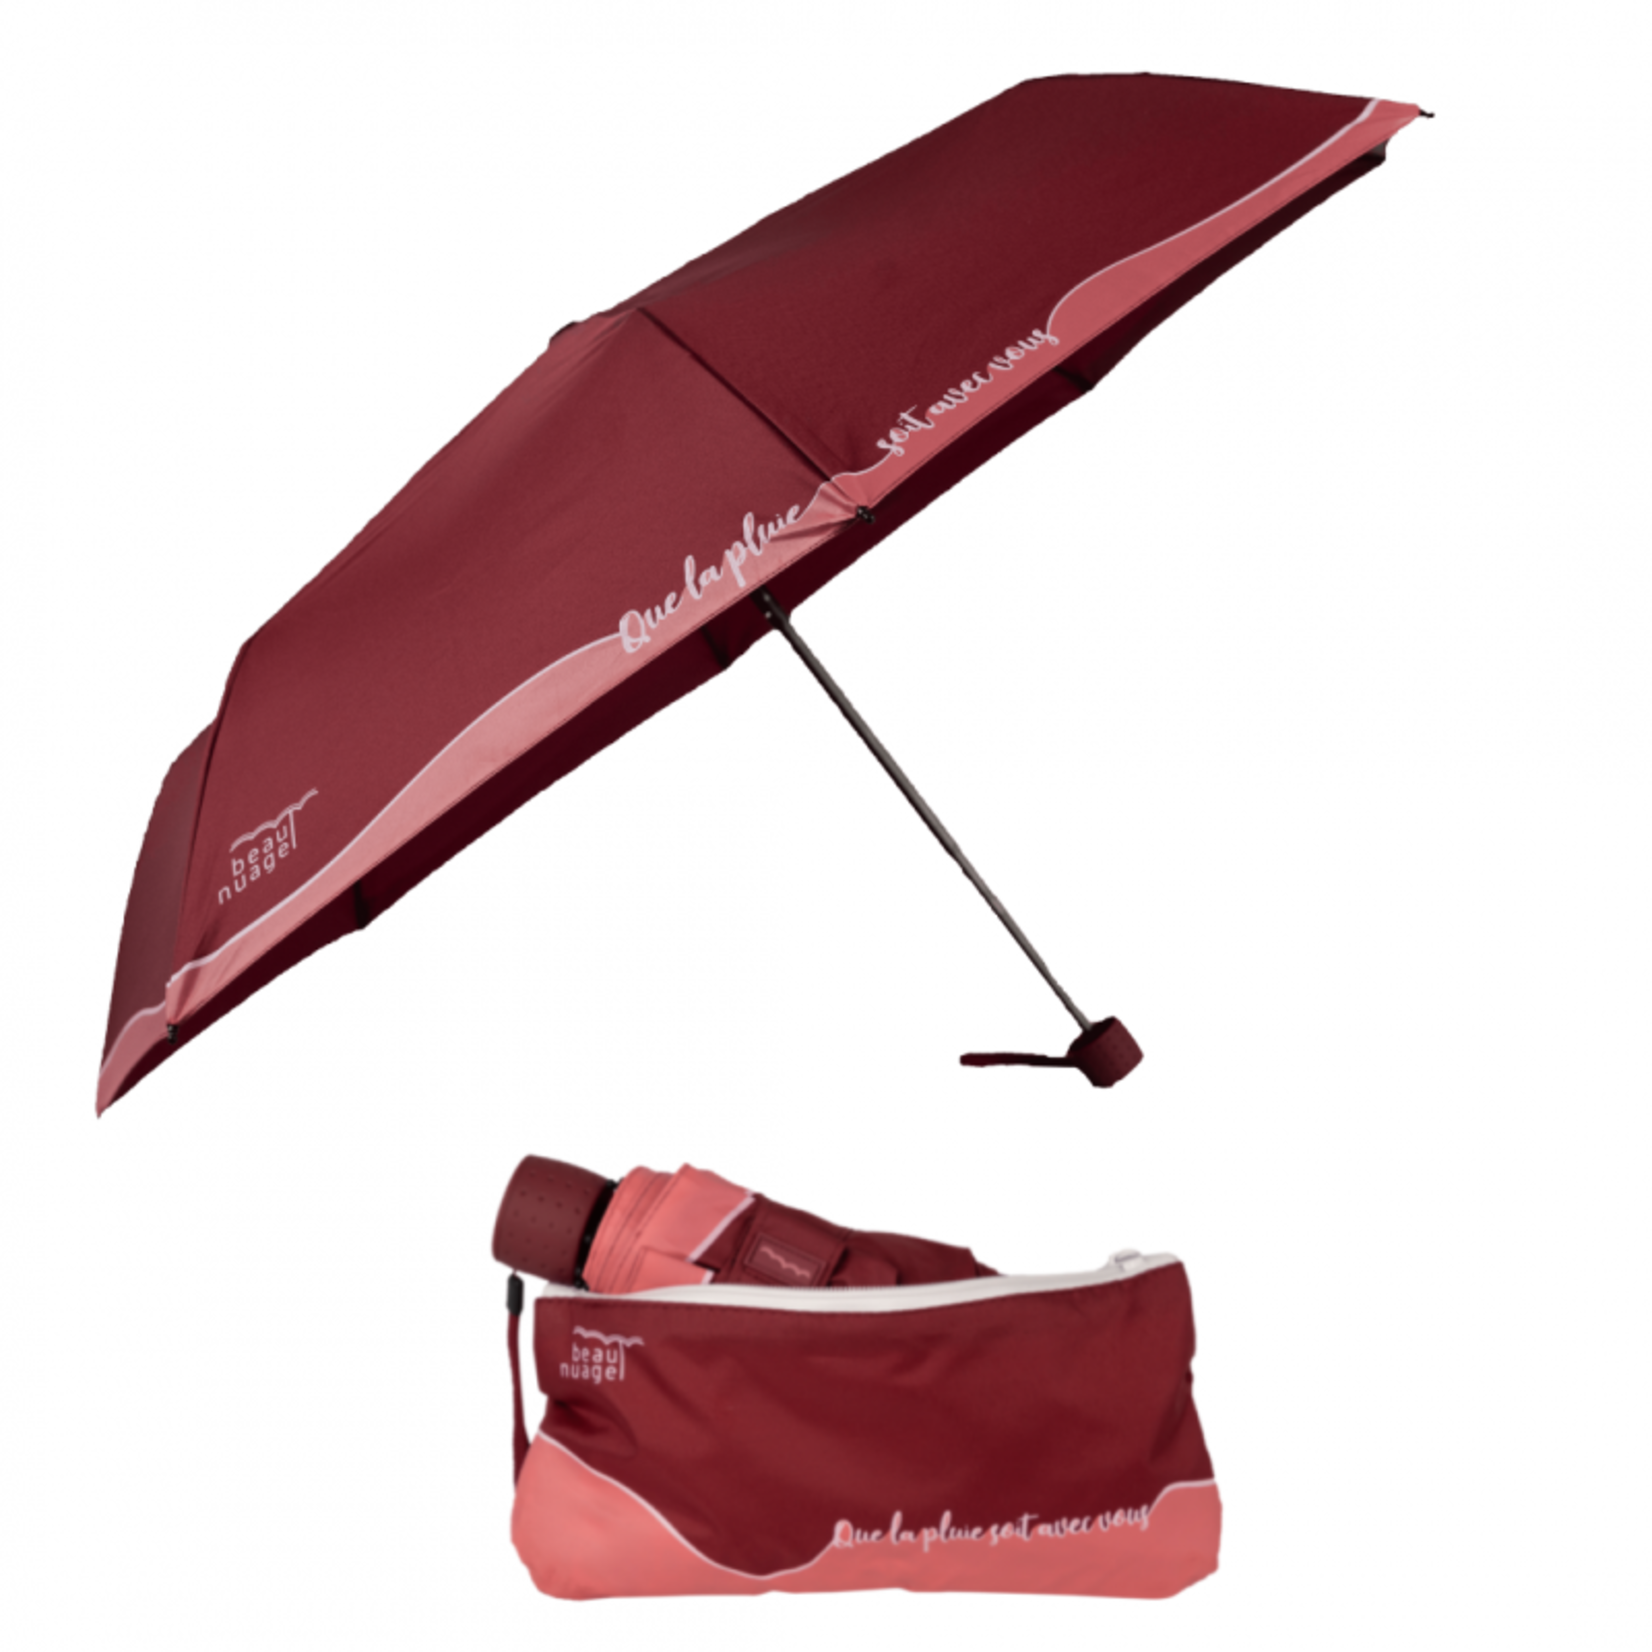 Beau Nuage Beau nuage – Parapluie éco-responsable - Le Mini - rouge grenat